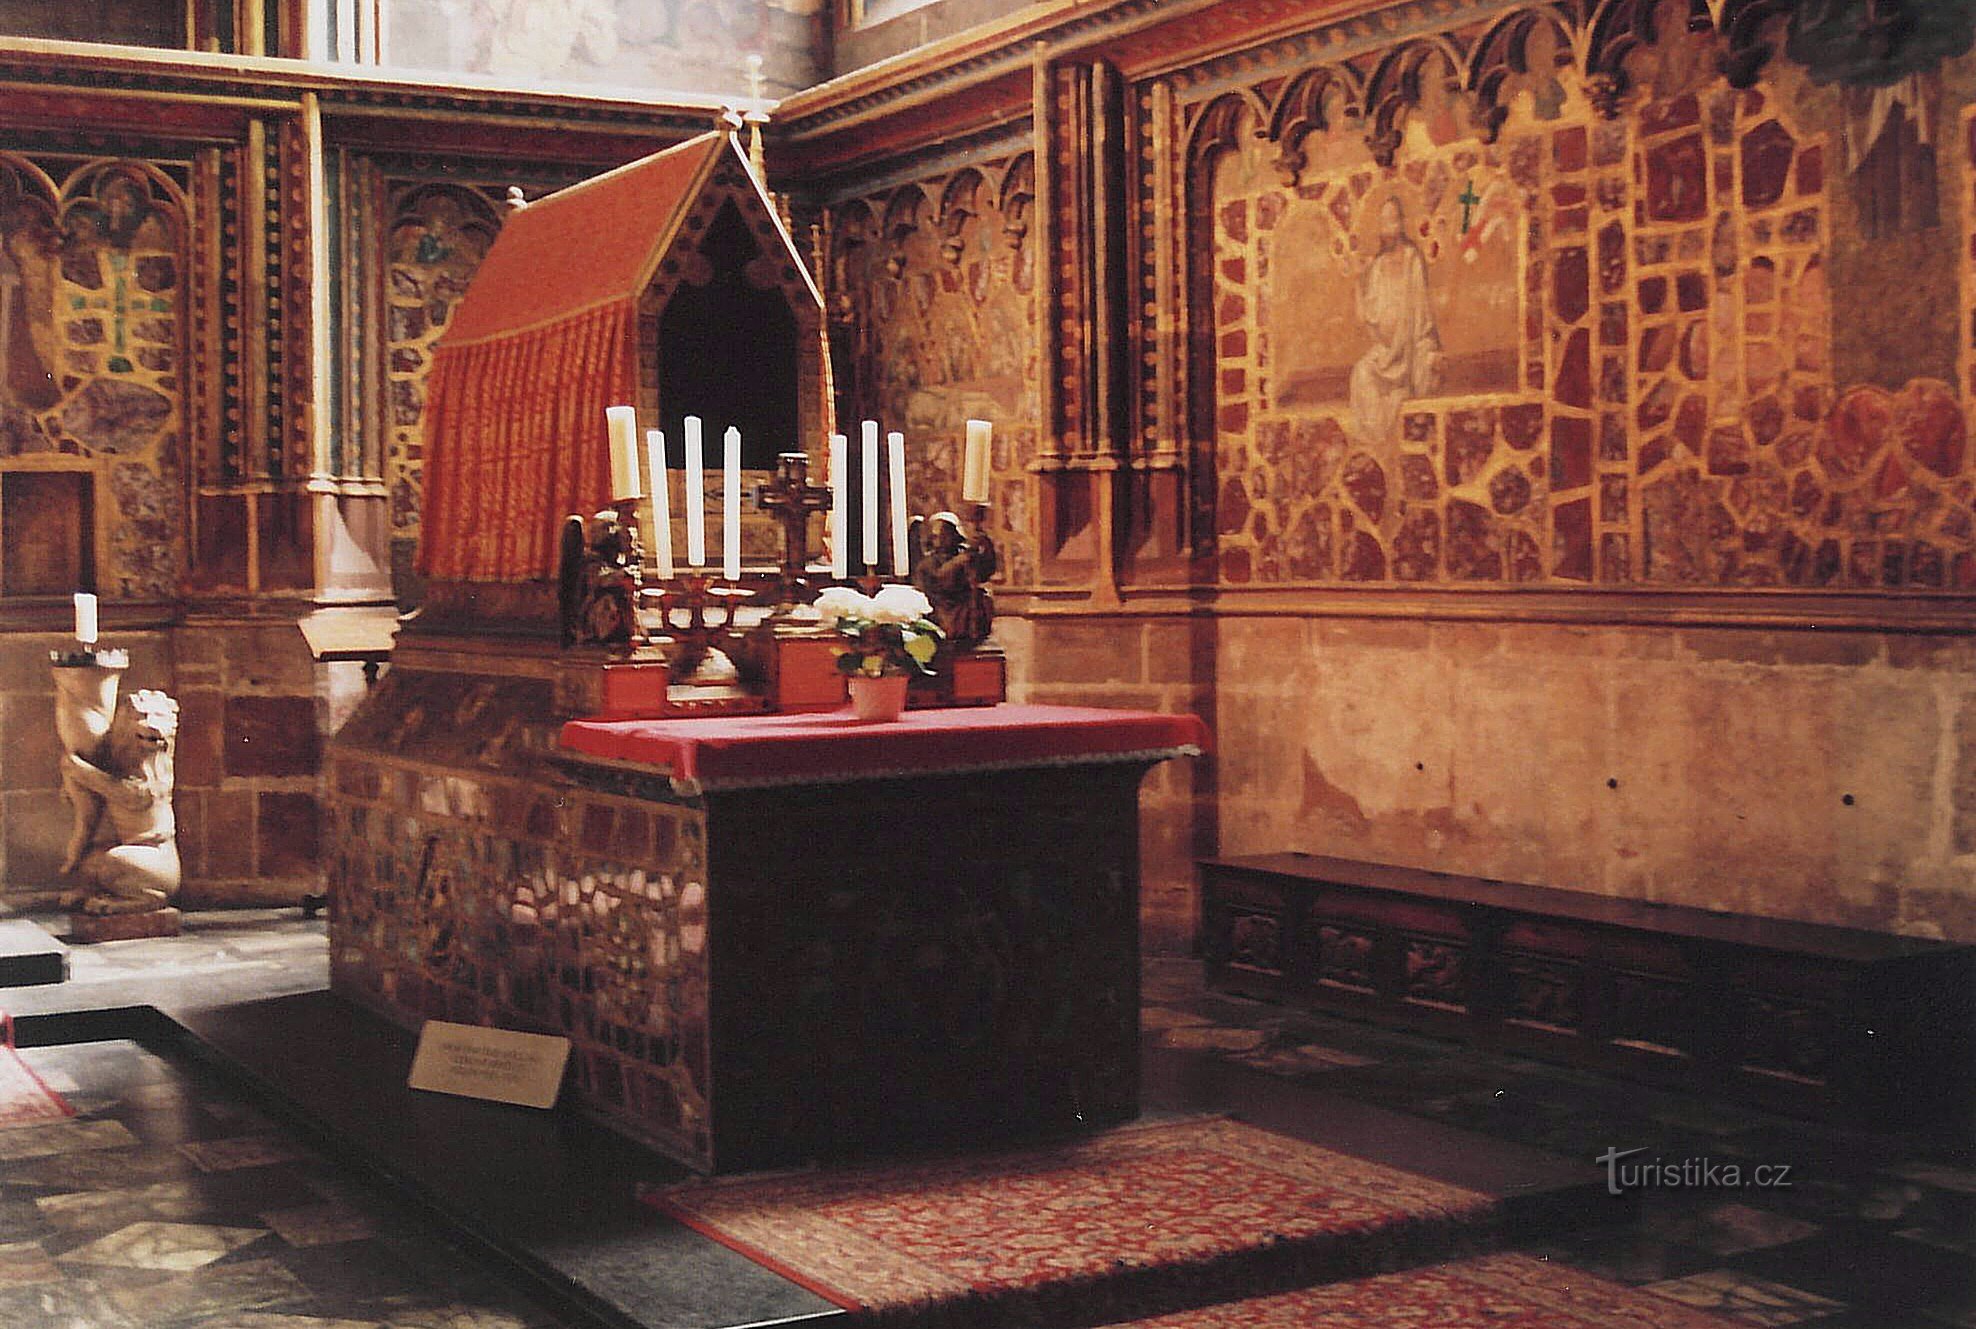 Prag - kapela sv. Vaclava, najvrjednije umjetničko blago srednje Europe